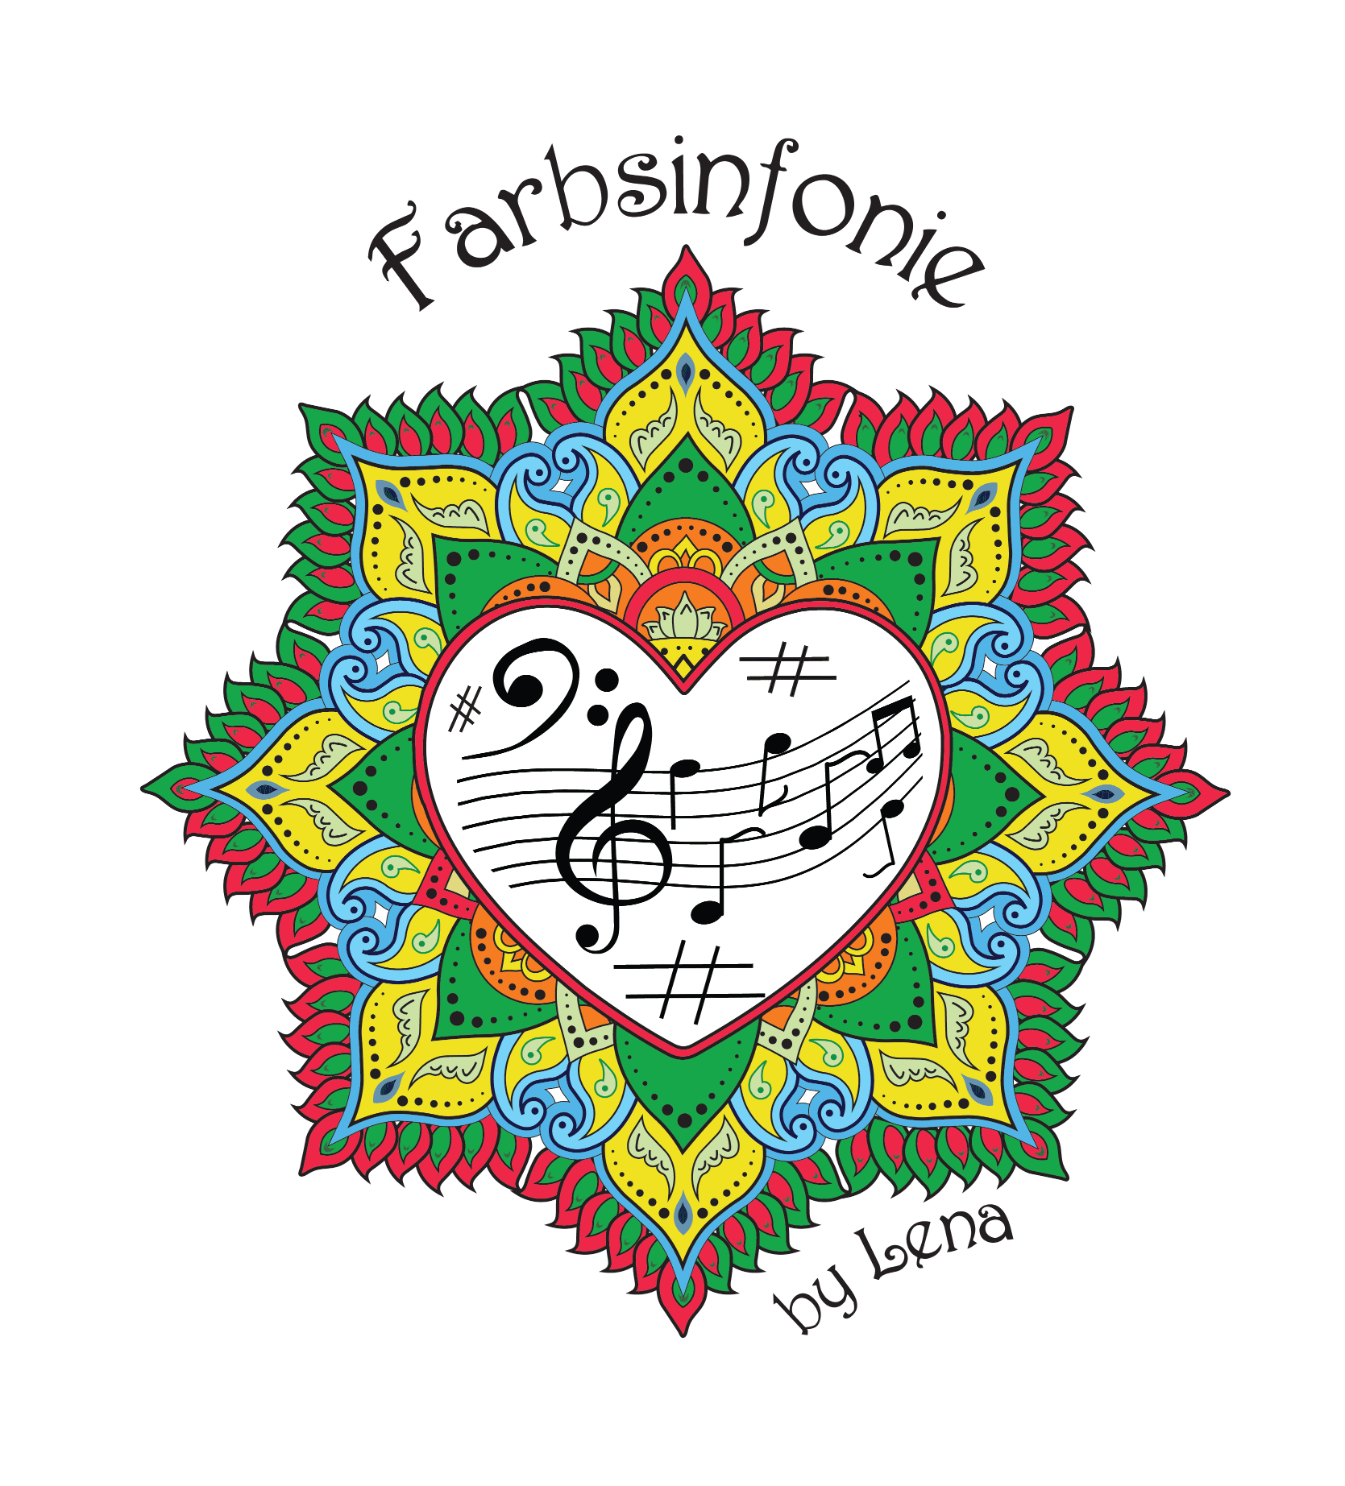 Farbsinfonie by Lena